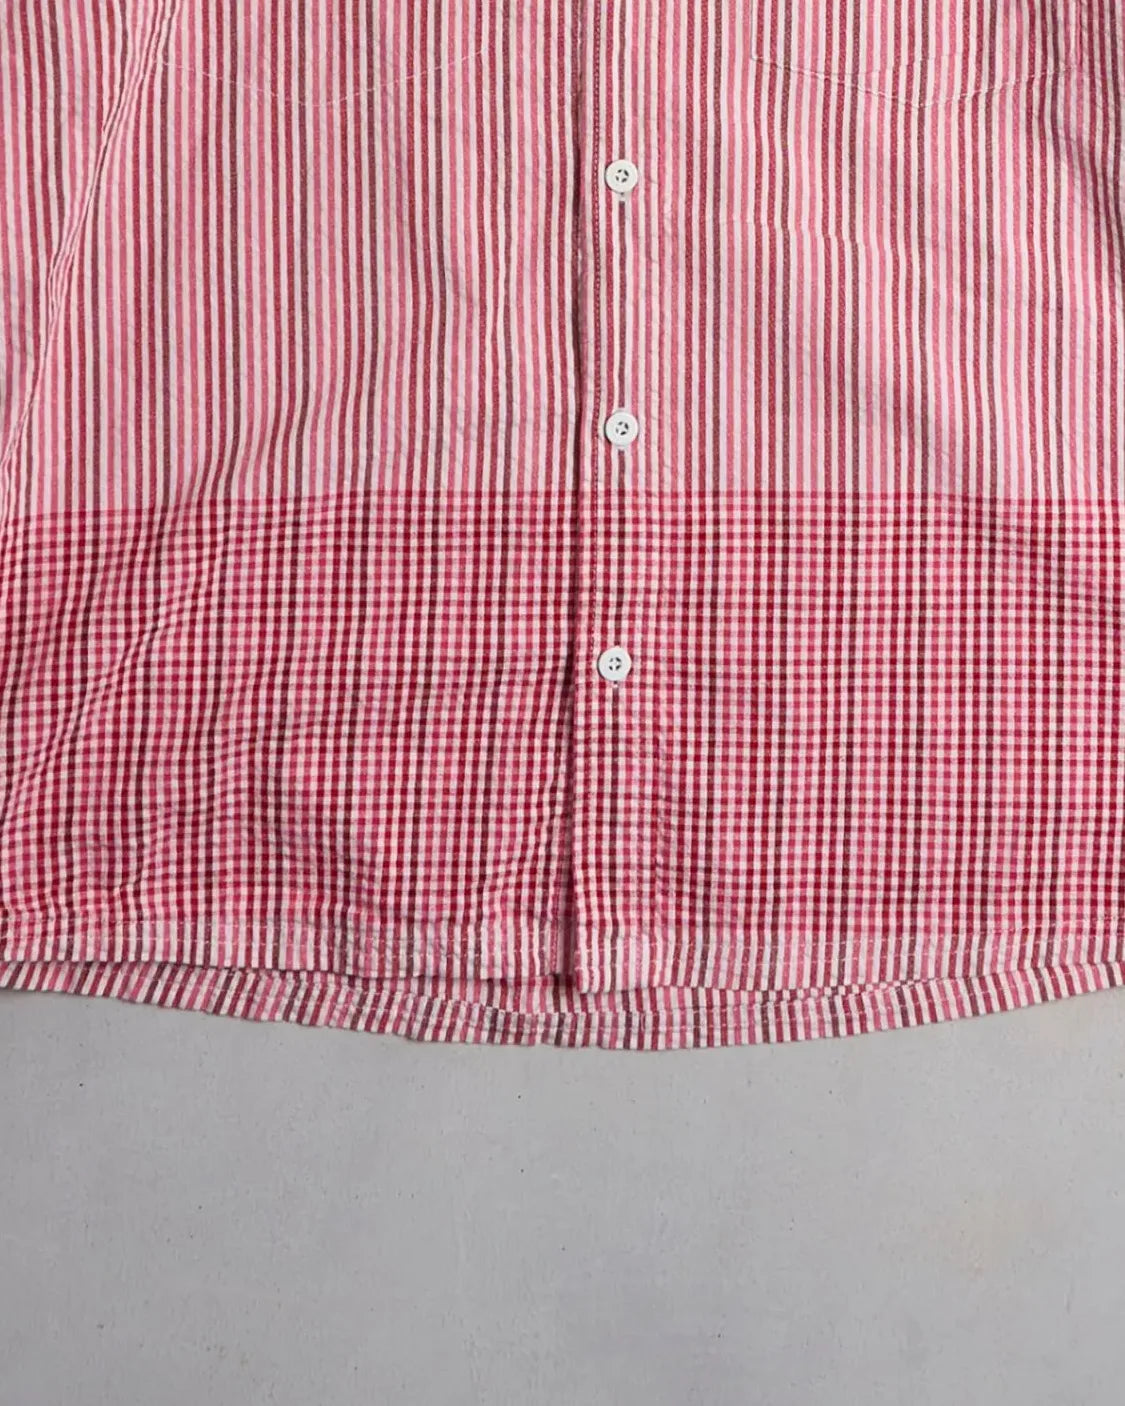 Vintage Wrangler Shirt Bottom